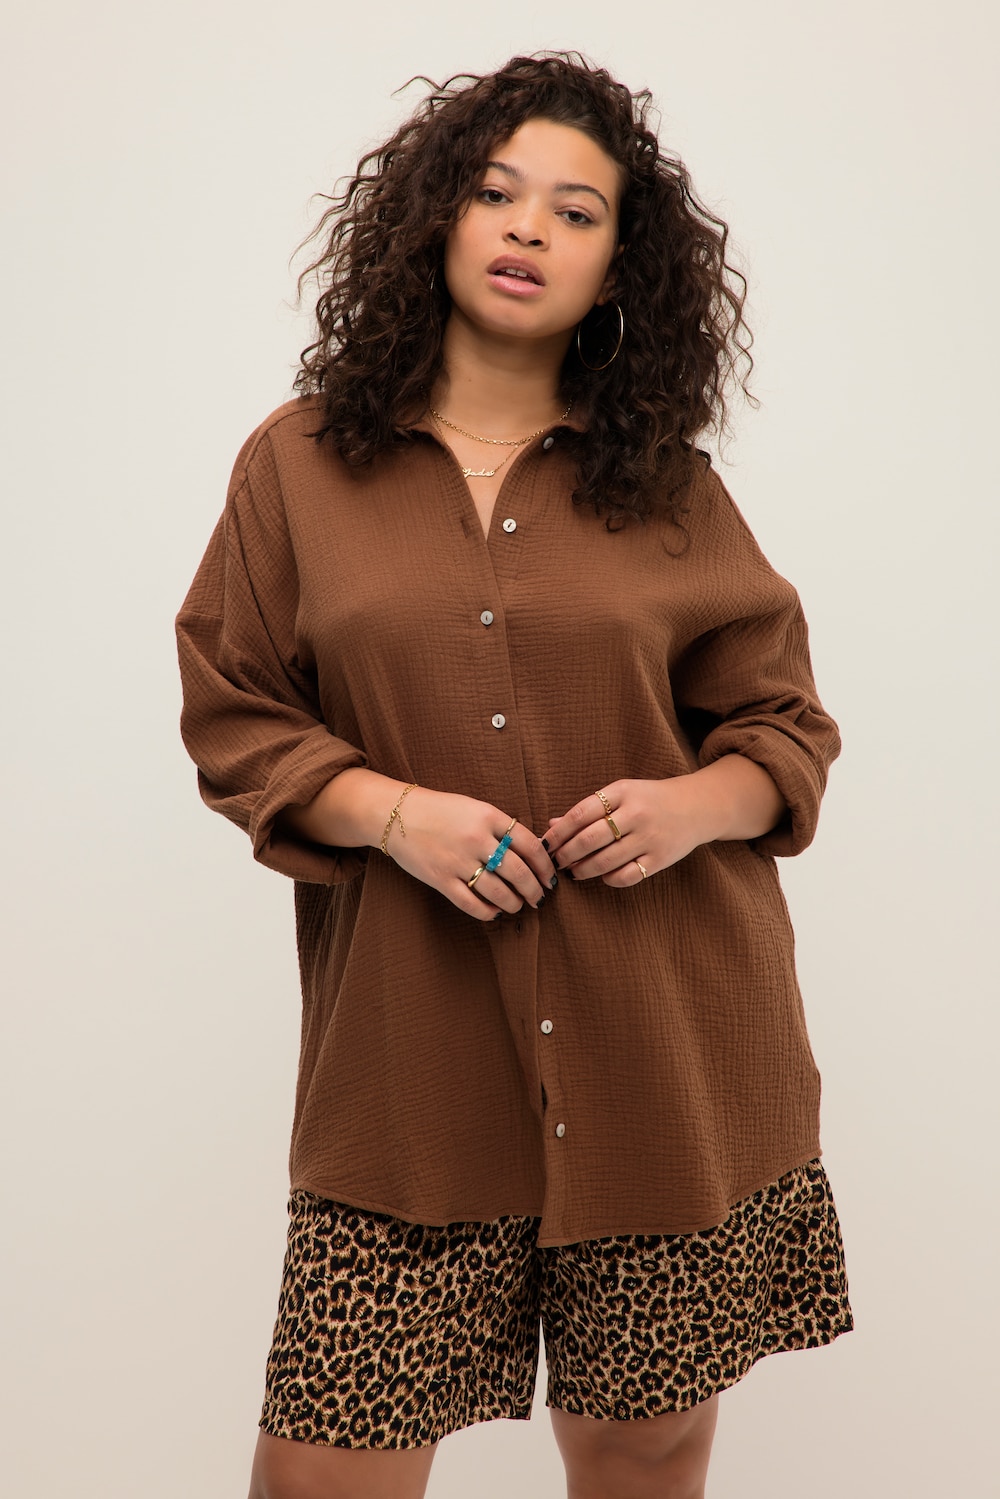 Grote Maten mousseline blouse, Dames, bruin, Maat: 58/60, Katoen, Studio Untold